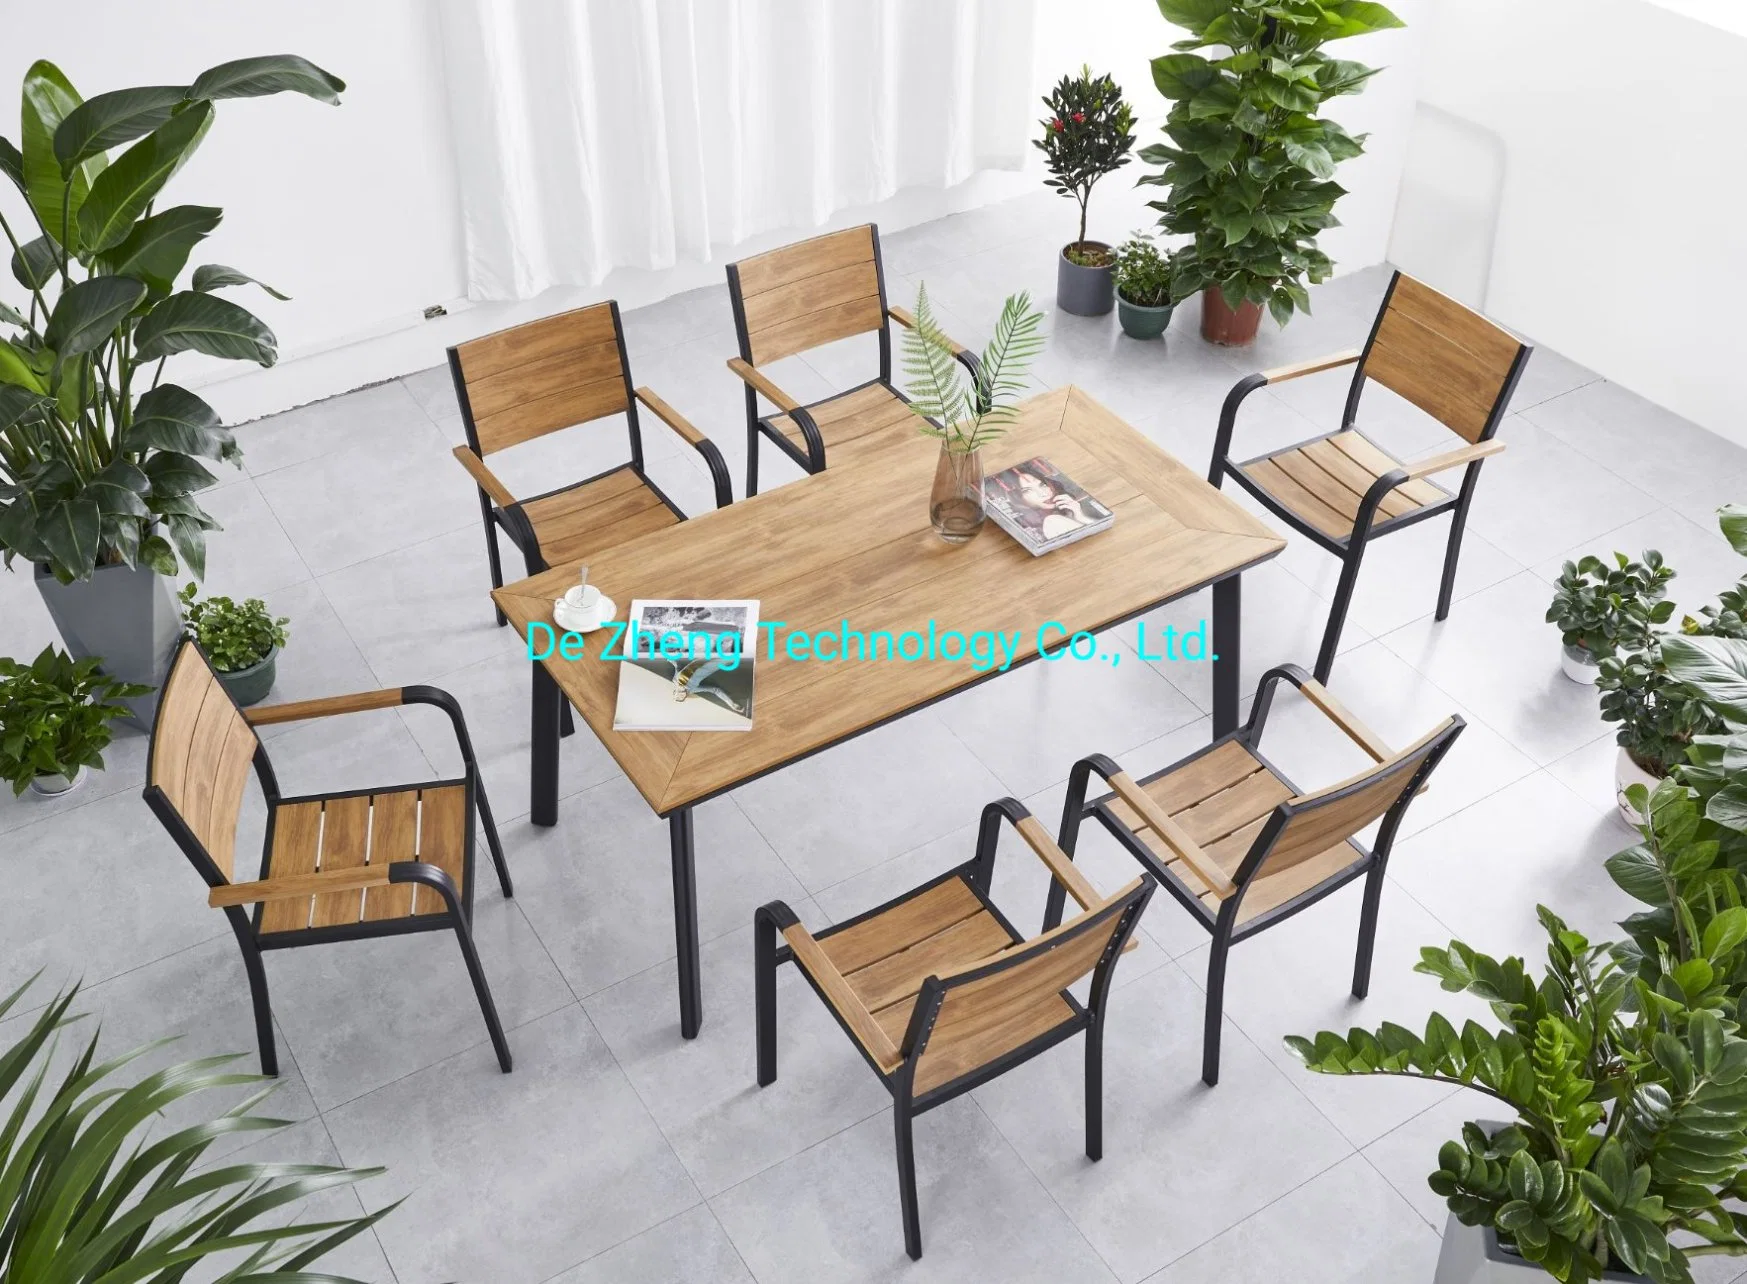 Hôtel Restaurant aluminium de haute qualité en plein air avec chaises de table en bois Jeu 6 personne